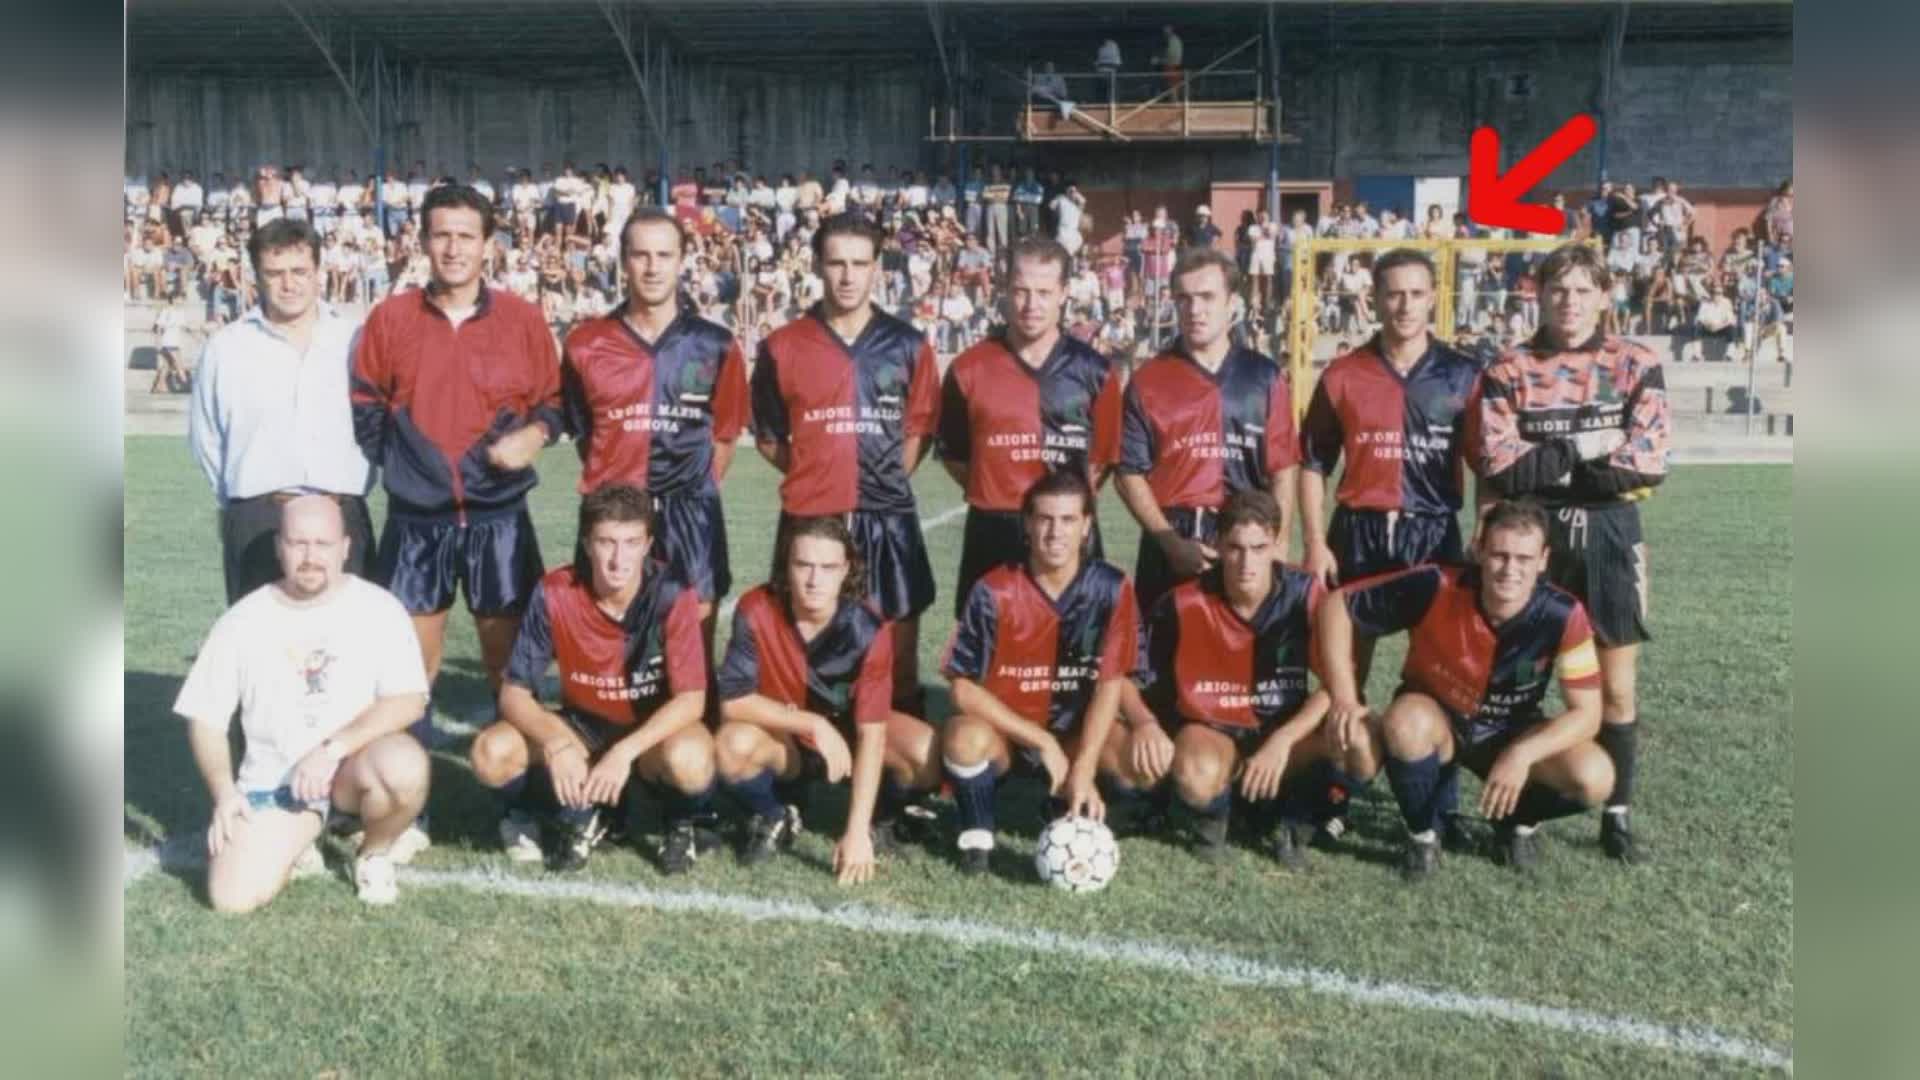 Calcio: Sestri Levante, Andrea Scotto nuovo allenatore, giocò nei "Corsari" dal '92 al '98